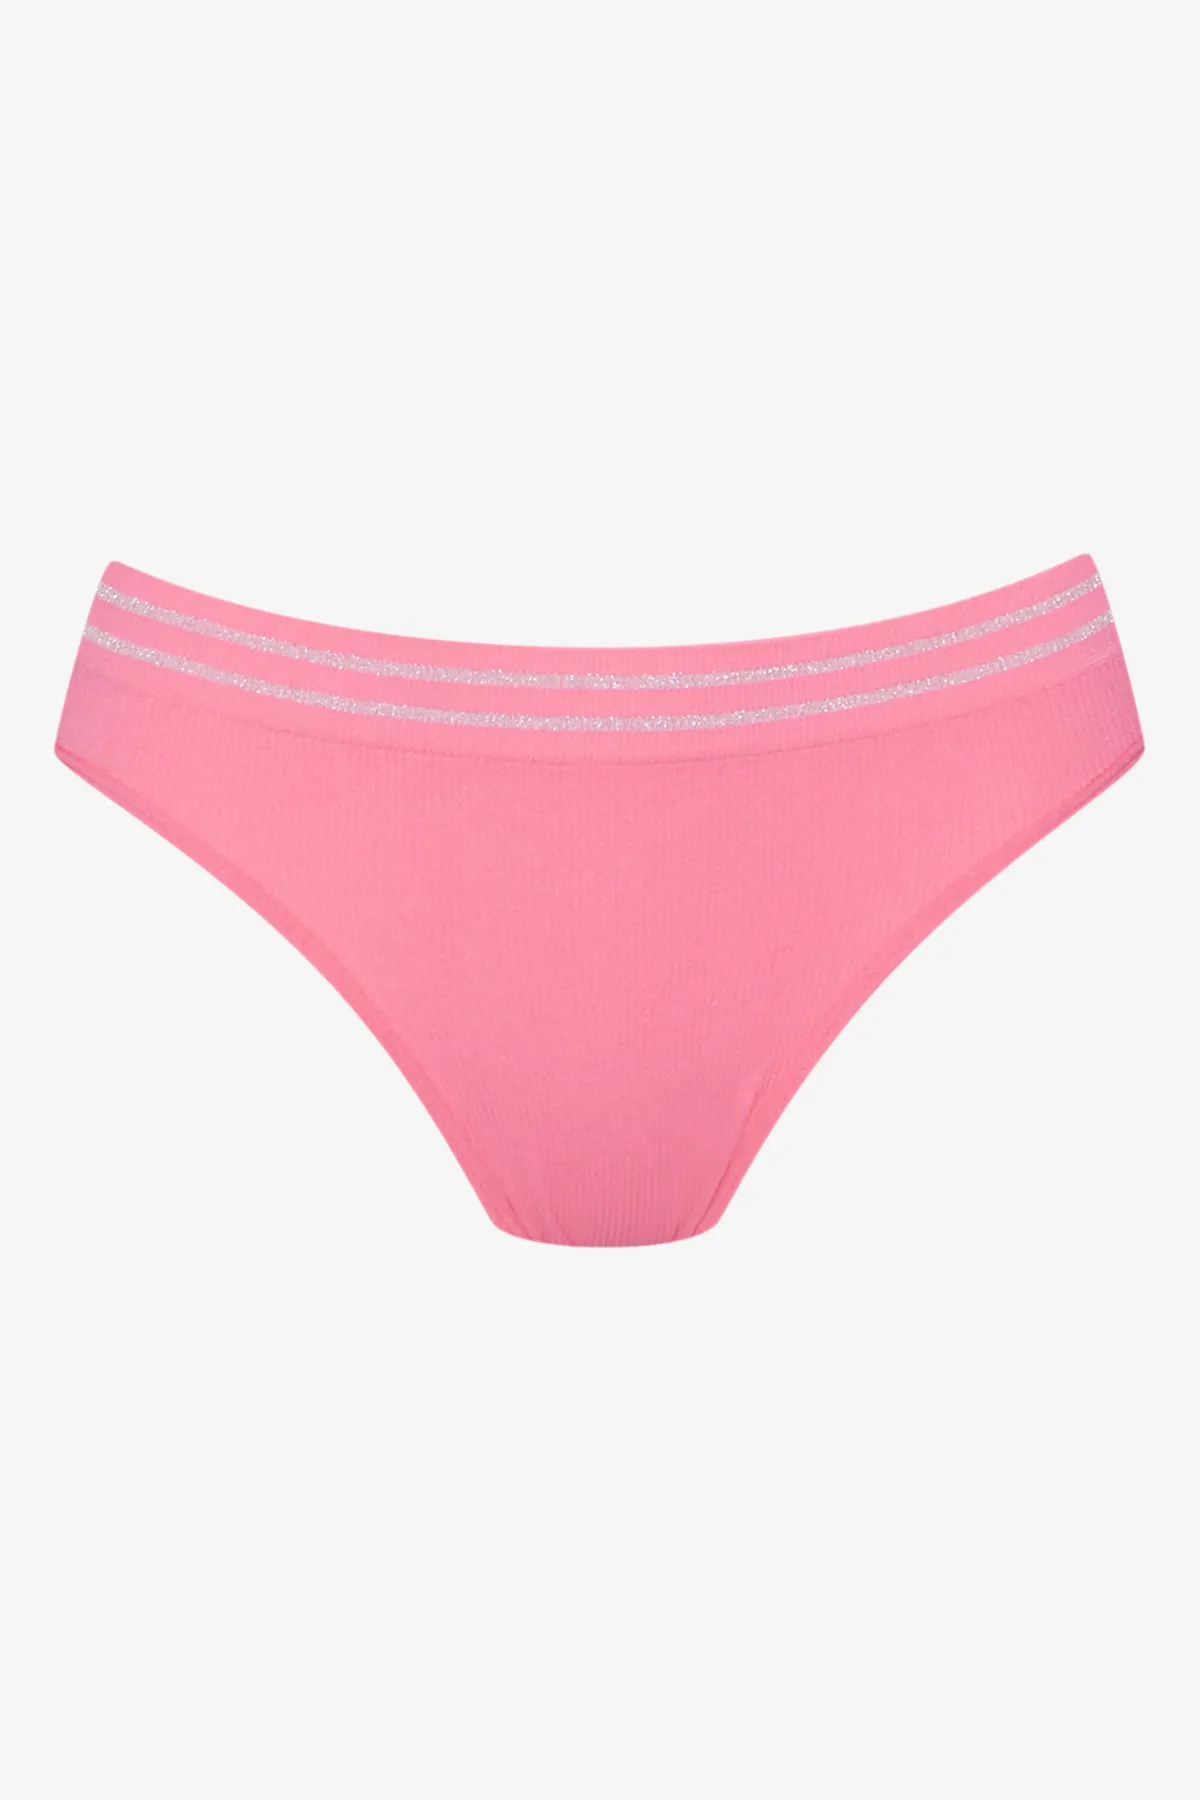 Seamfree panty pink - TEEN GIRLS Seamfree